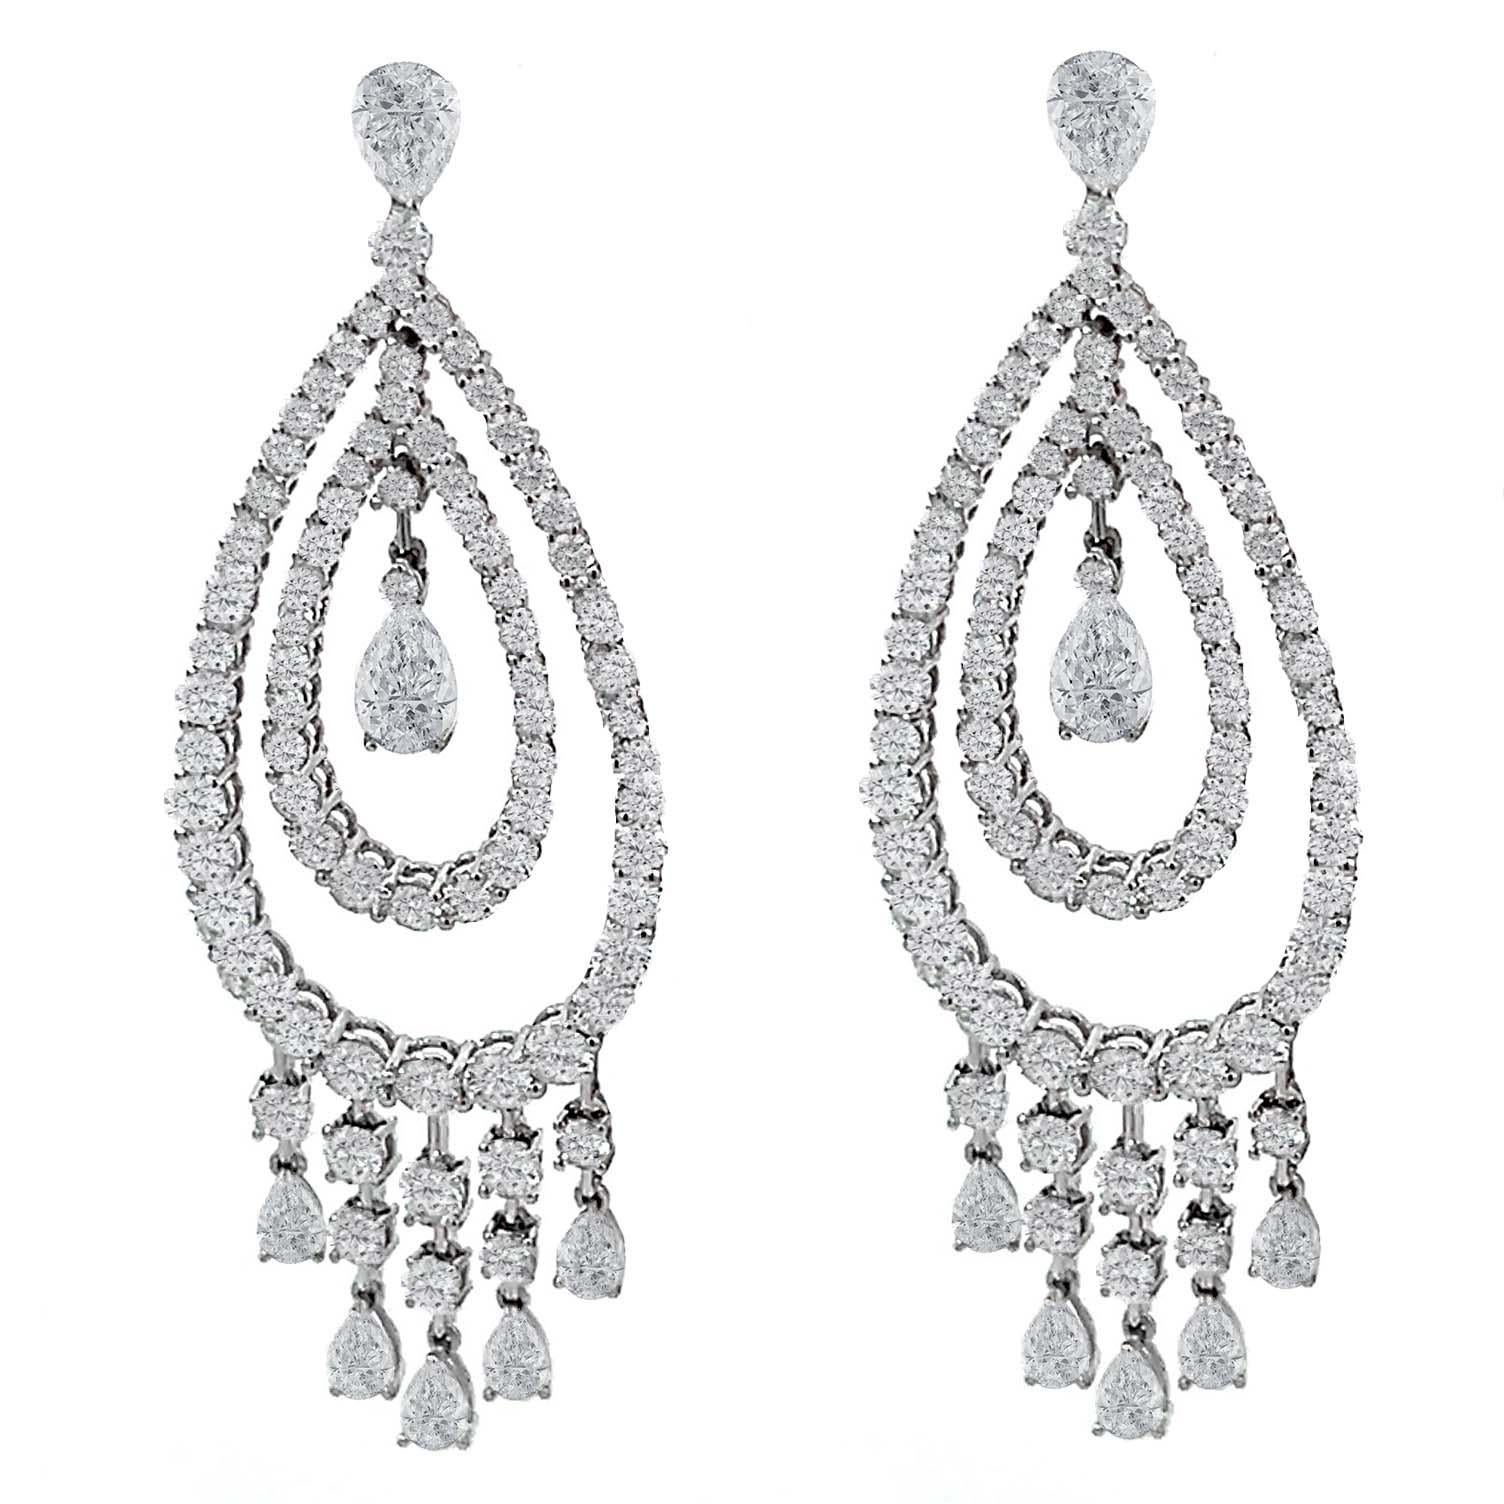  10.14 Carat Diamond Dangle Chandelier Earrings For Sale